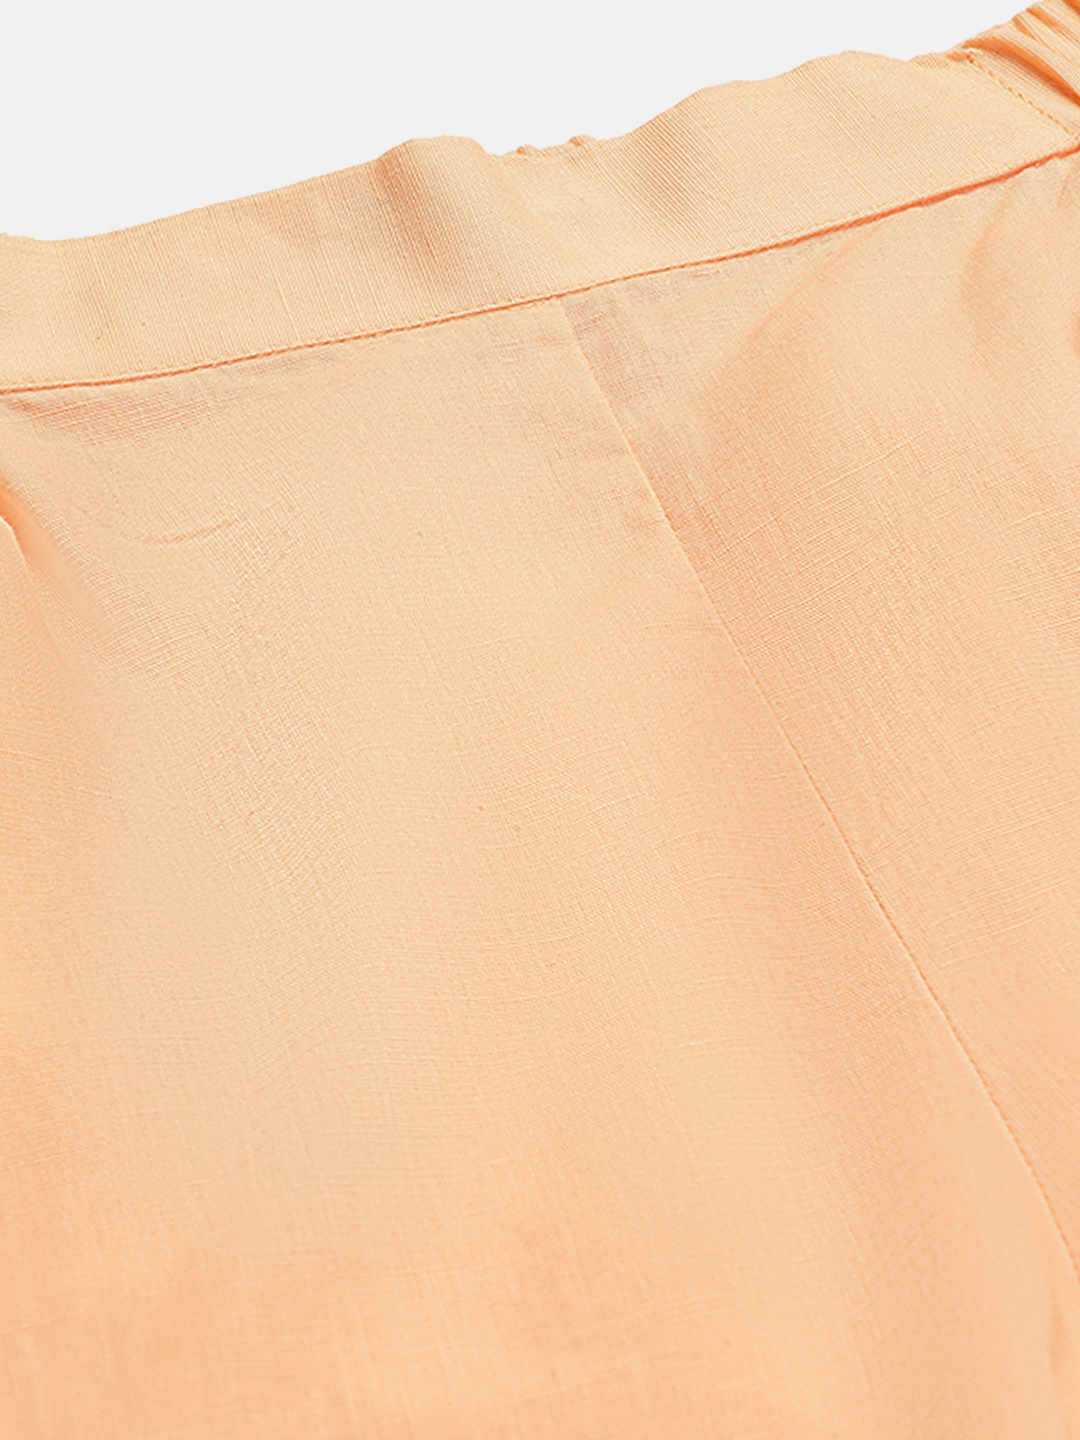 Premium Peach Cotton Linen Crop Shirt & Trouser Slim Fit Co-ord Set